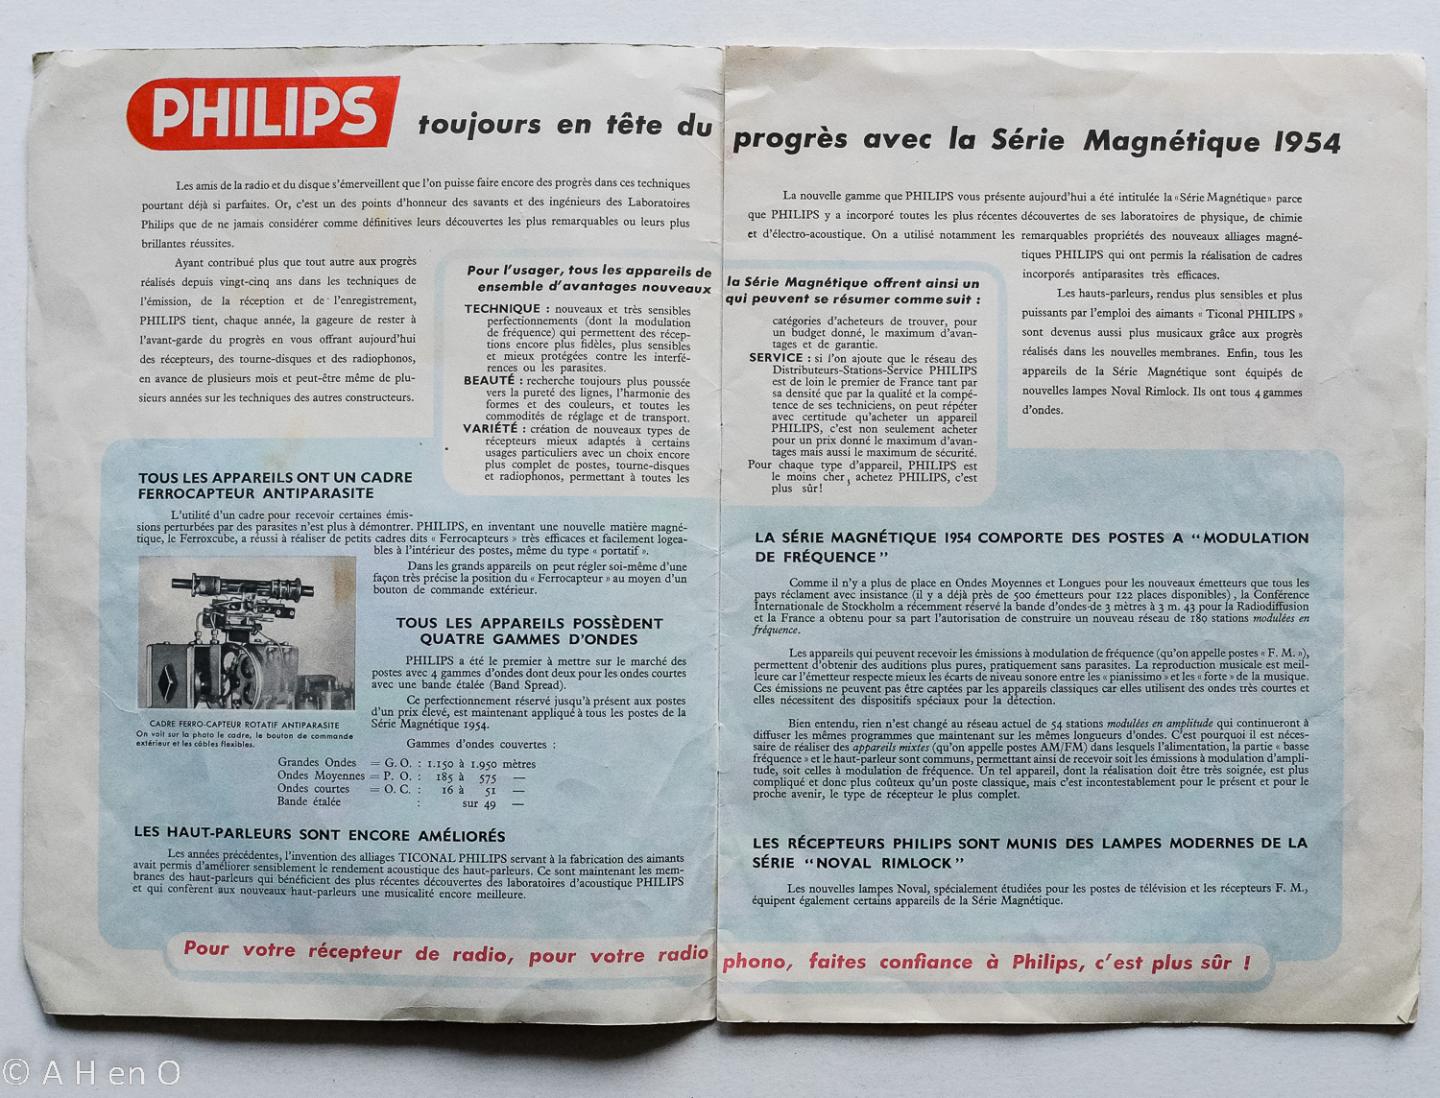 Philips Gloeilampenfabrieken Nederland n.v., Eindhoven - Série magnétique 1954 - radio- musique Philips